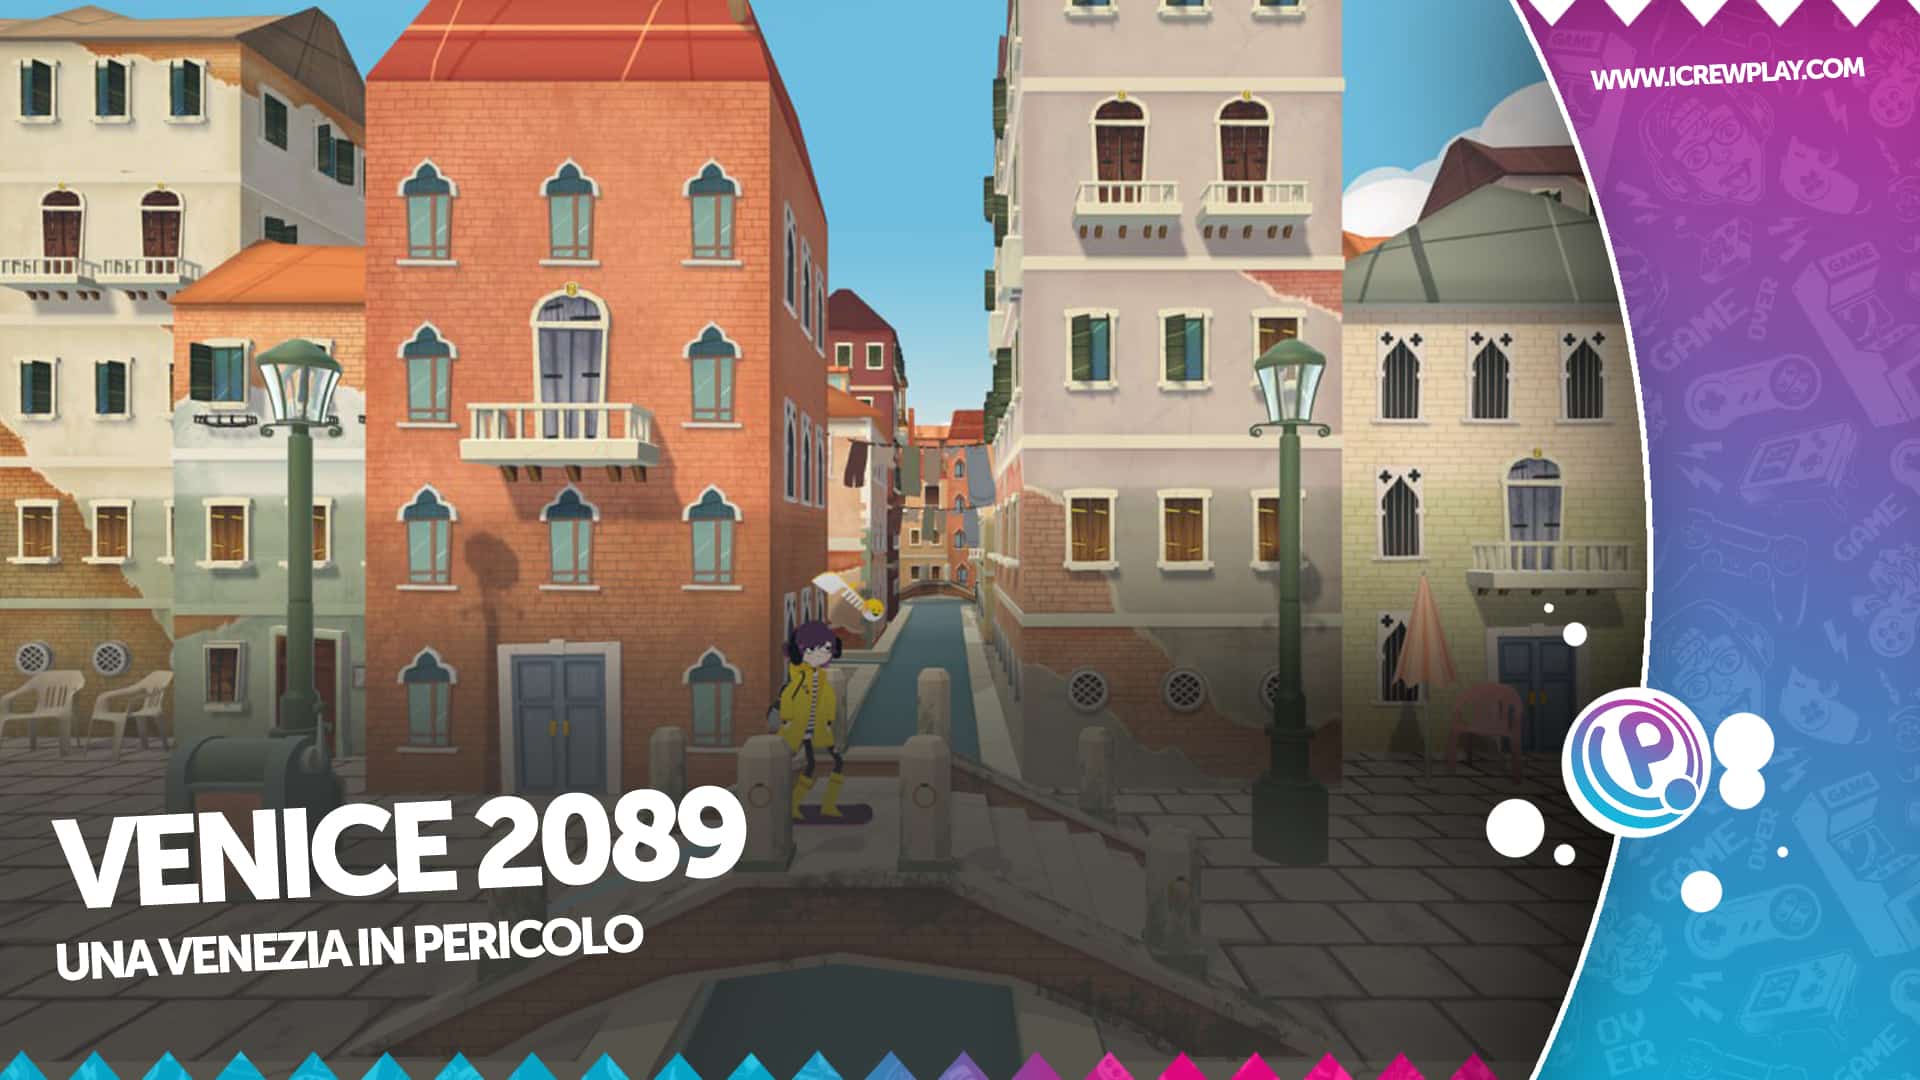 Venice 2089